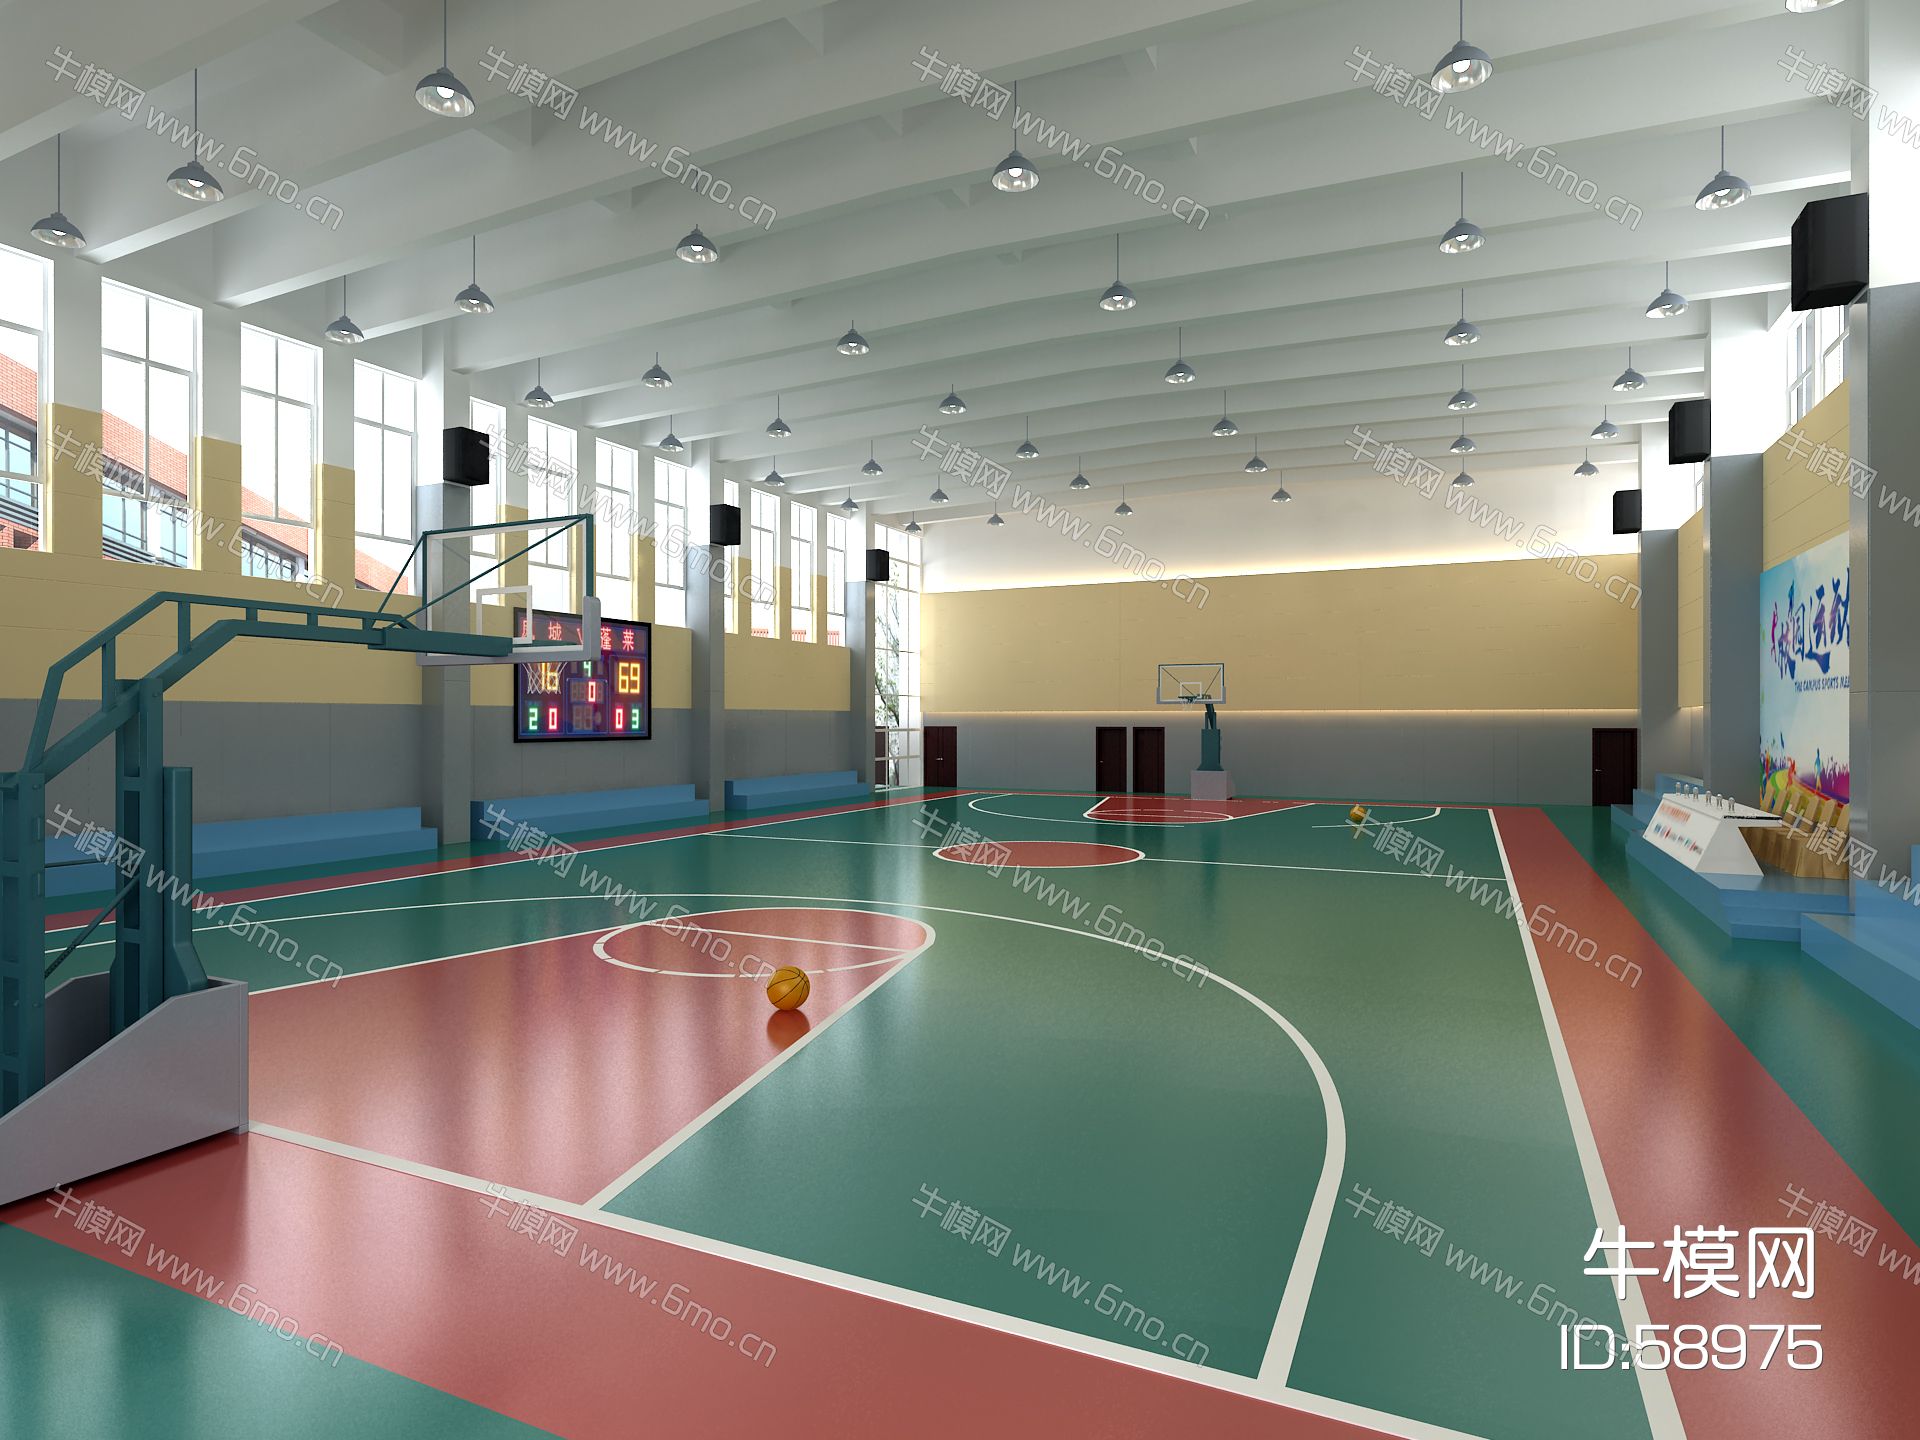 现代室内篮球场